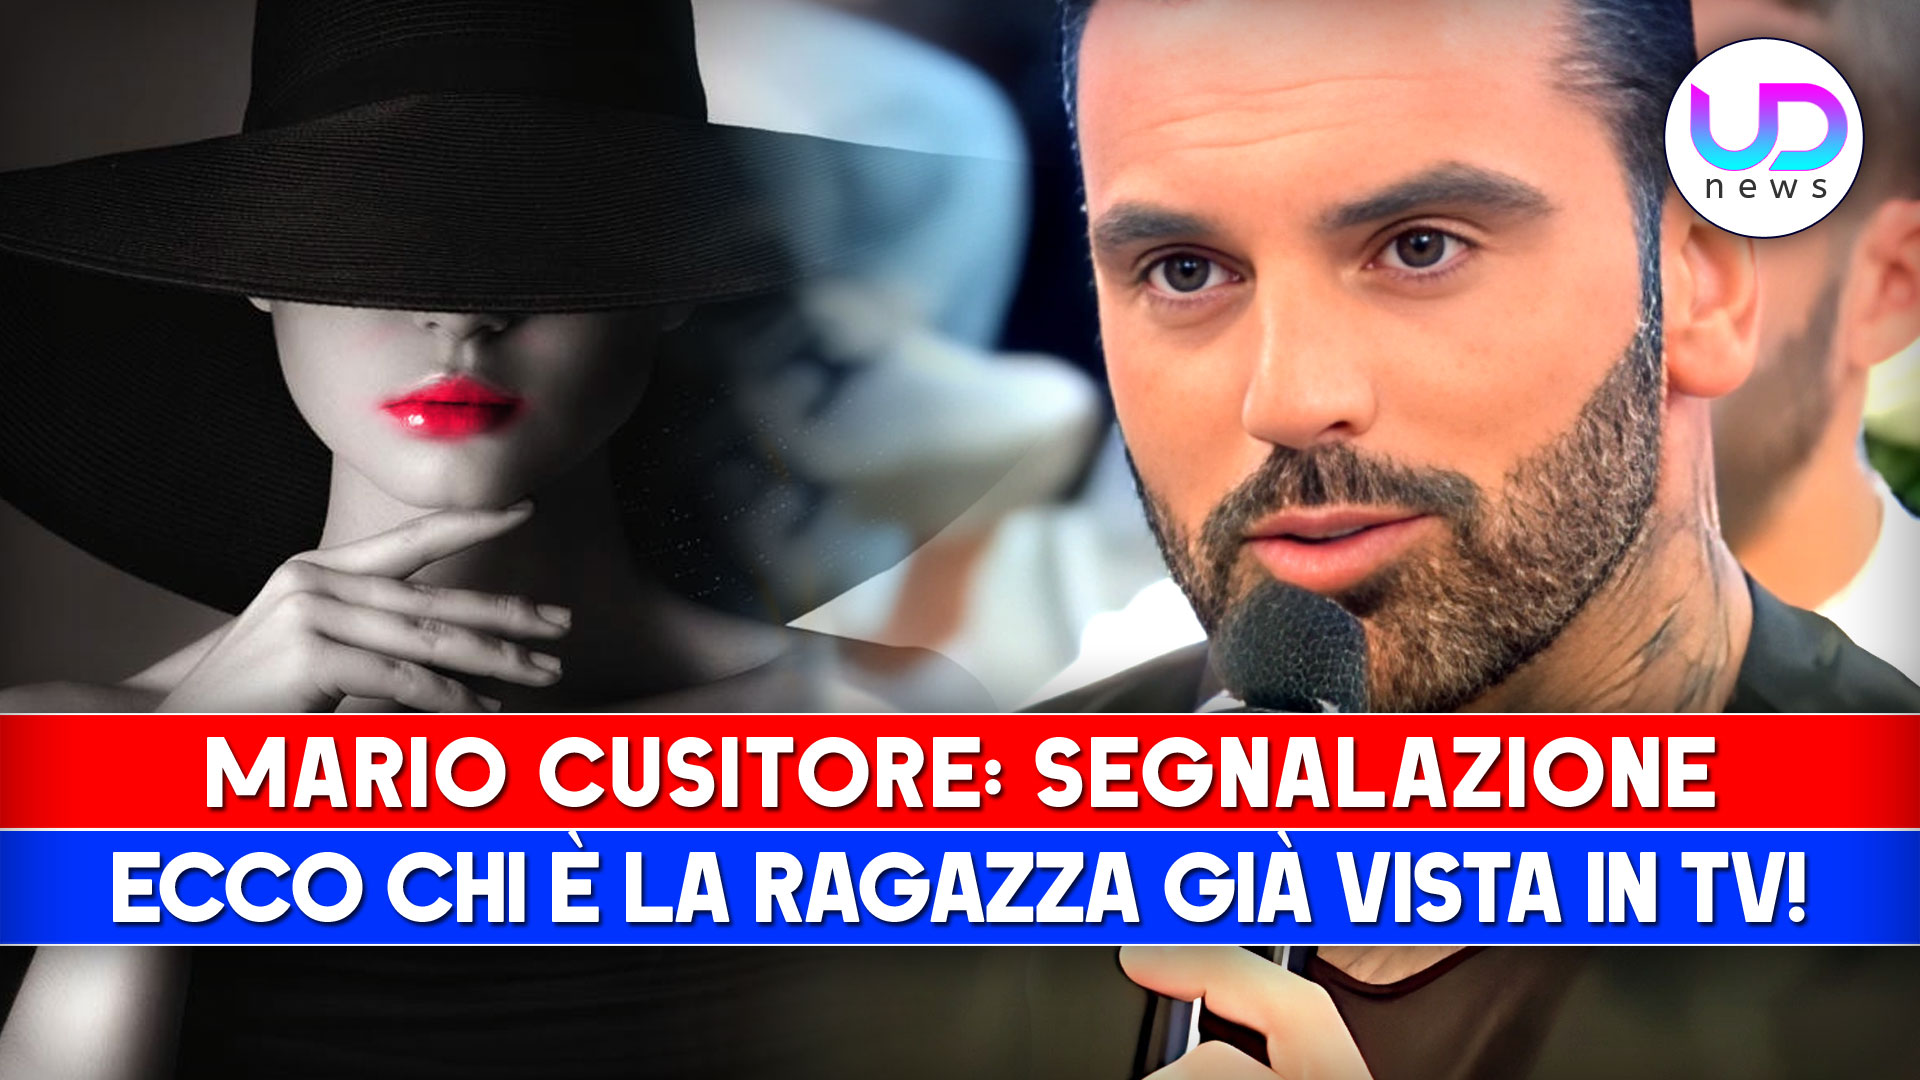 Mario Cusitore, Segnalazione: Ecco Chi È La Ragazza Già Vista In Tv!